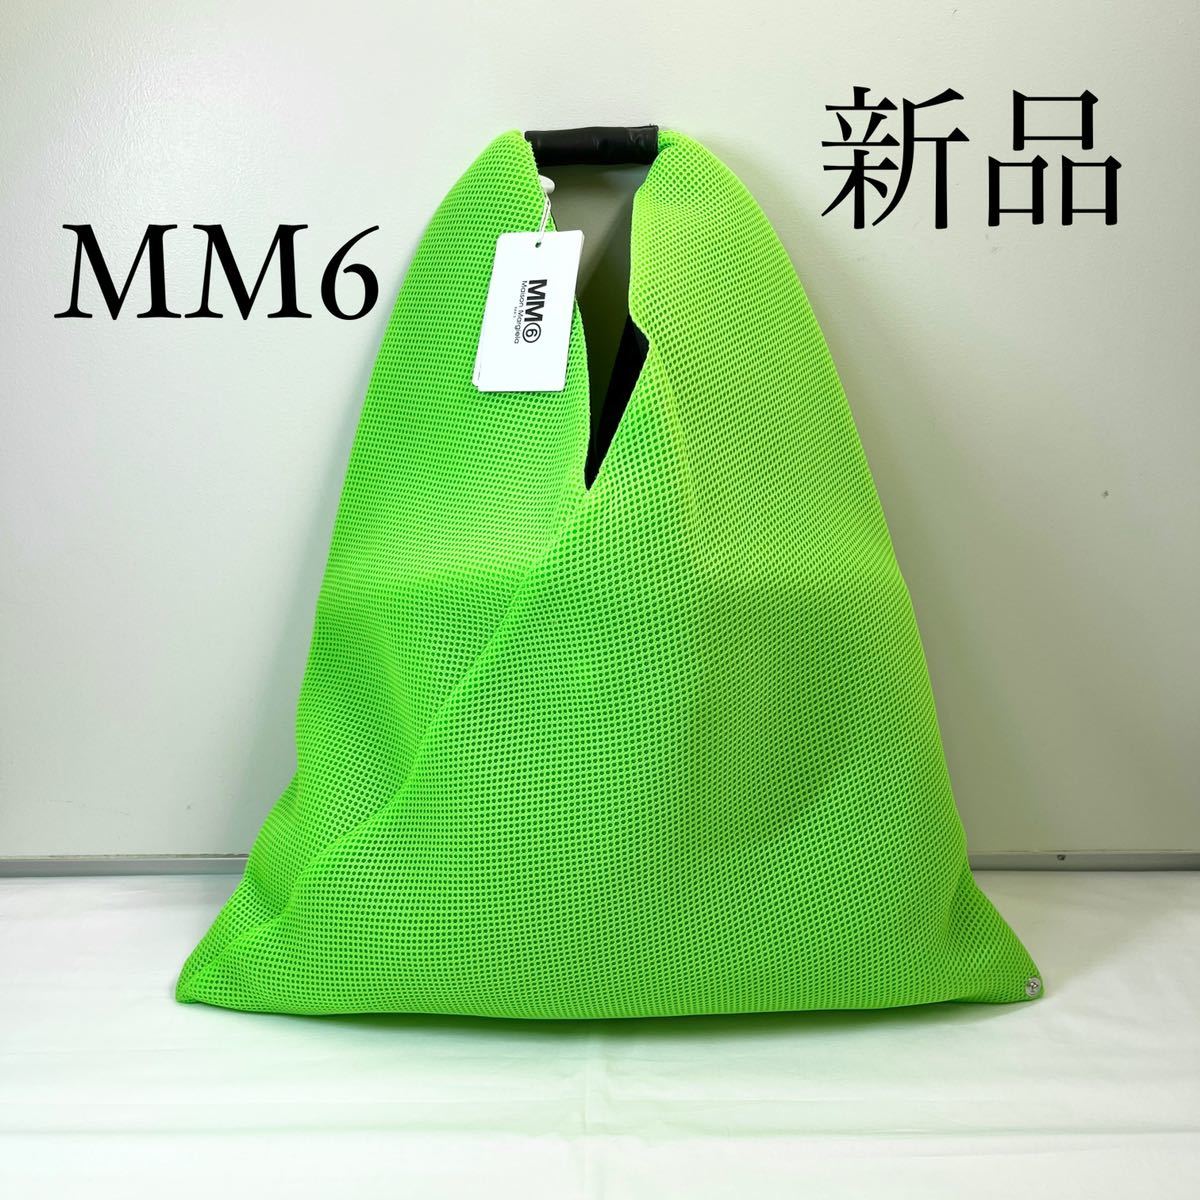 最安値で MM6 Margielaマルジェラ ジャパニーズトートバッグ 緑 Maison